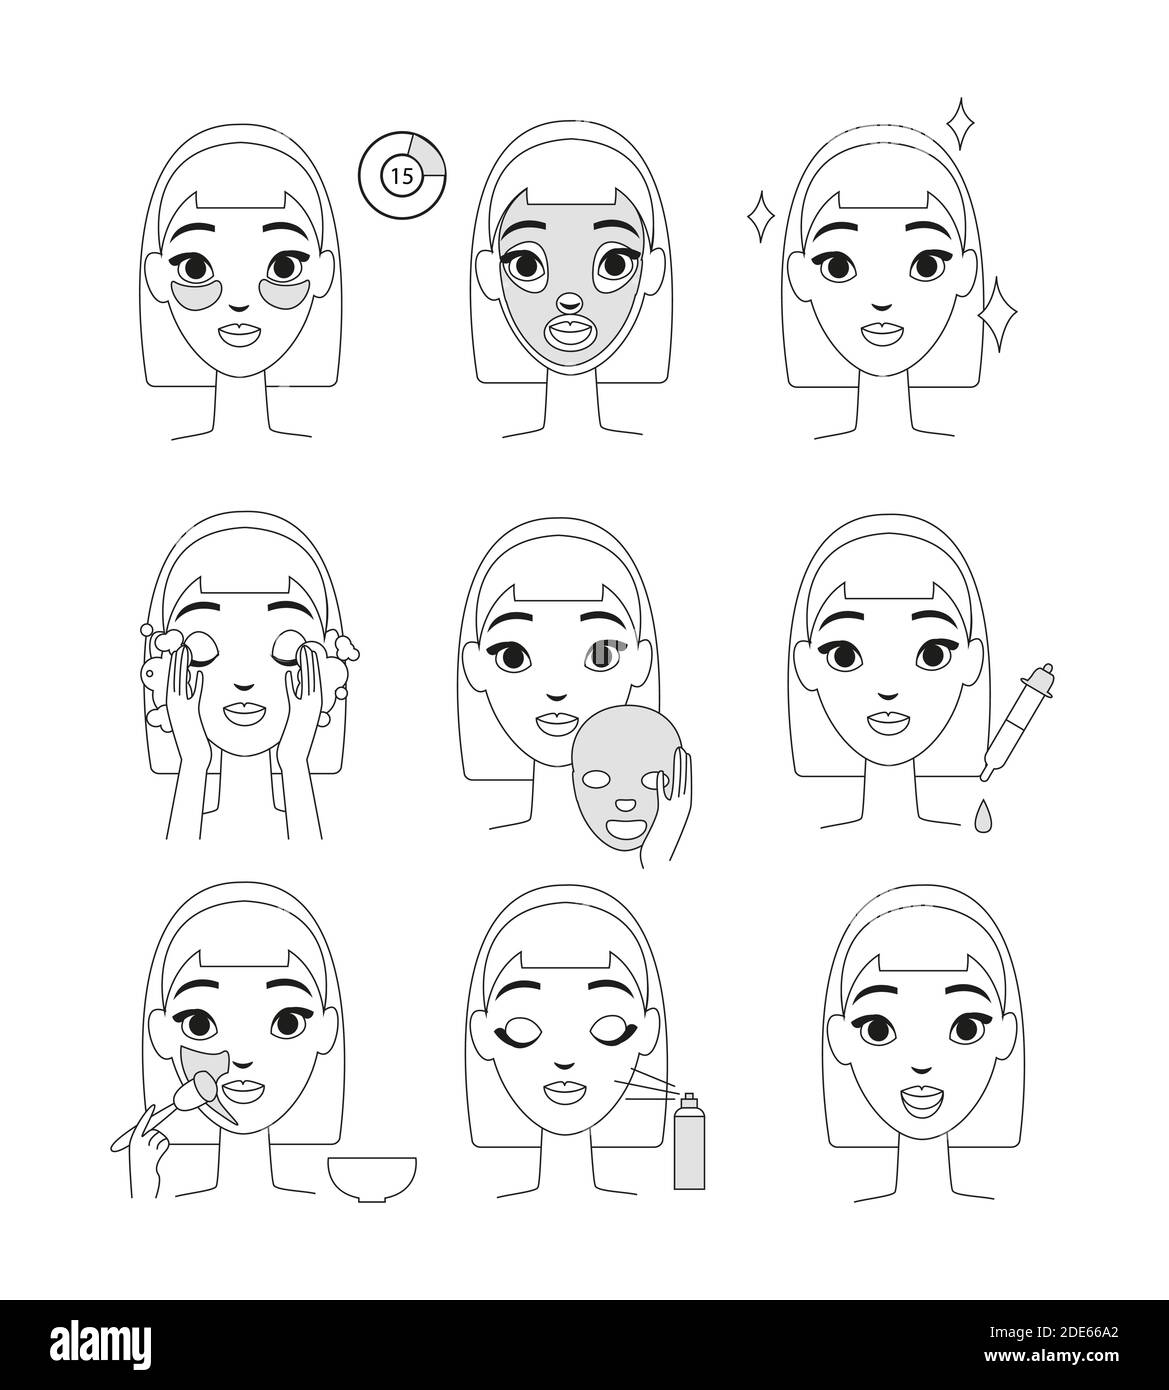 Illustrazione vettoriale delle istruzioni per l'uso della maschera cosmetica. Giovane donna che fa le procedure di bellezza impostate, lo stile della linea si isola su sfondo bianco. Illustrazione Vettoriale